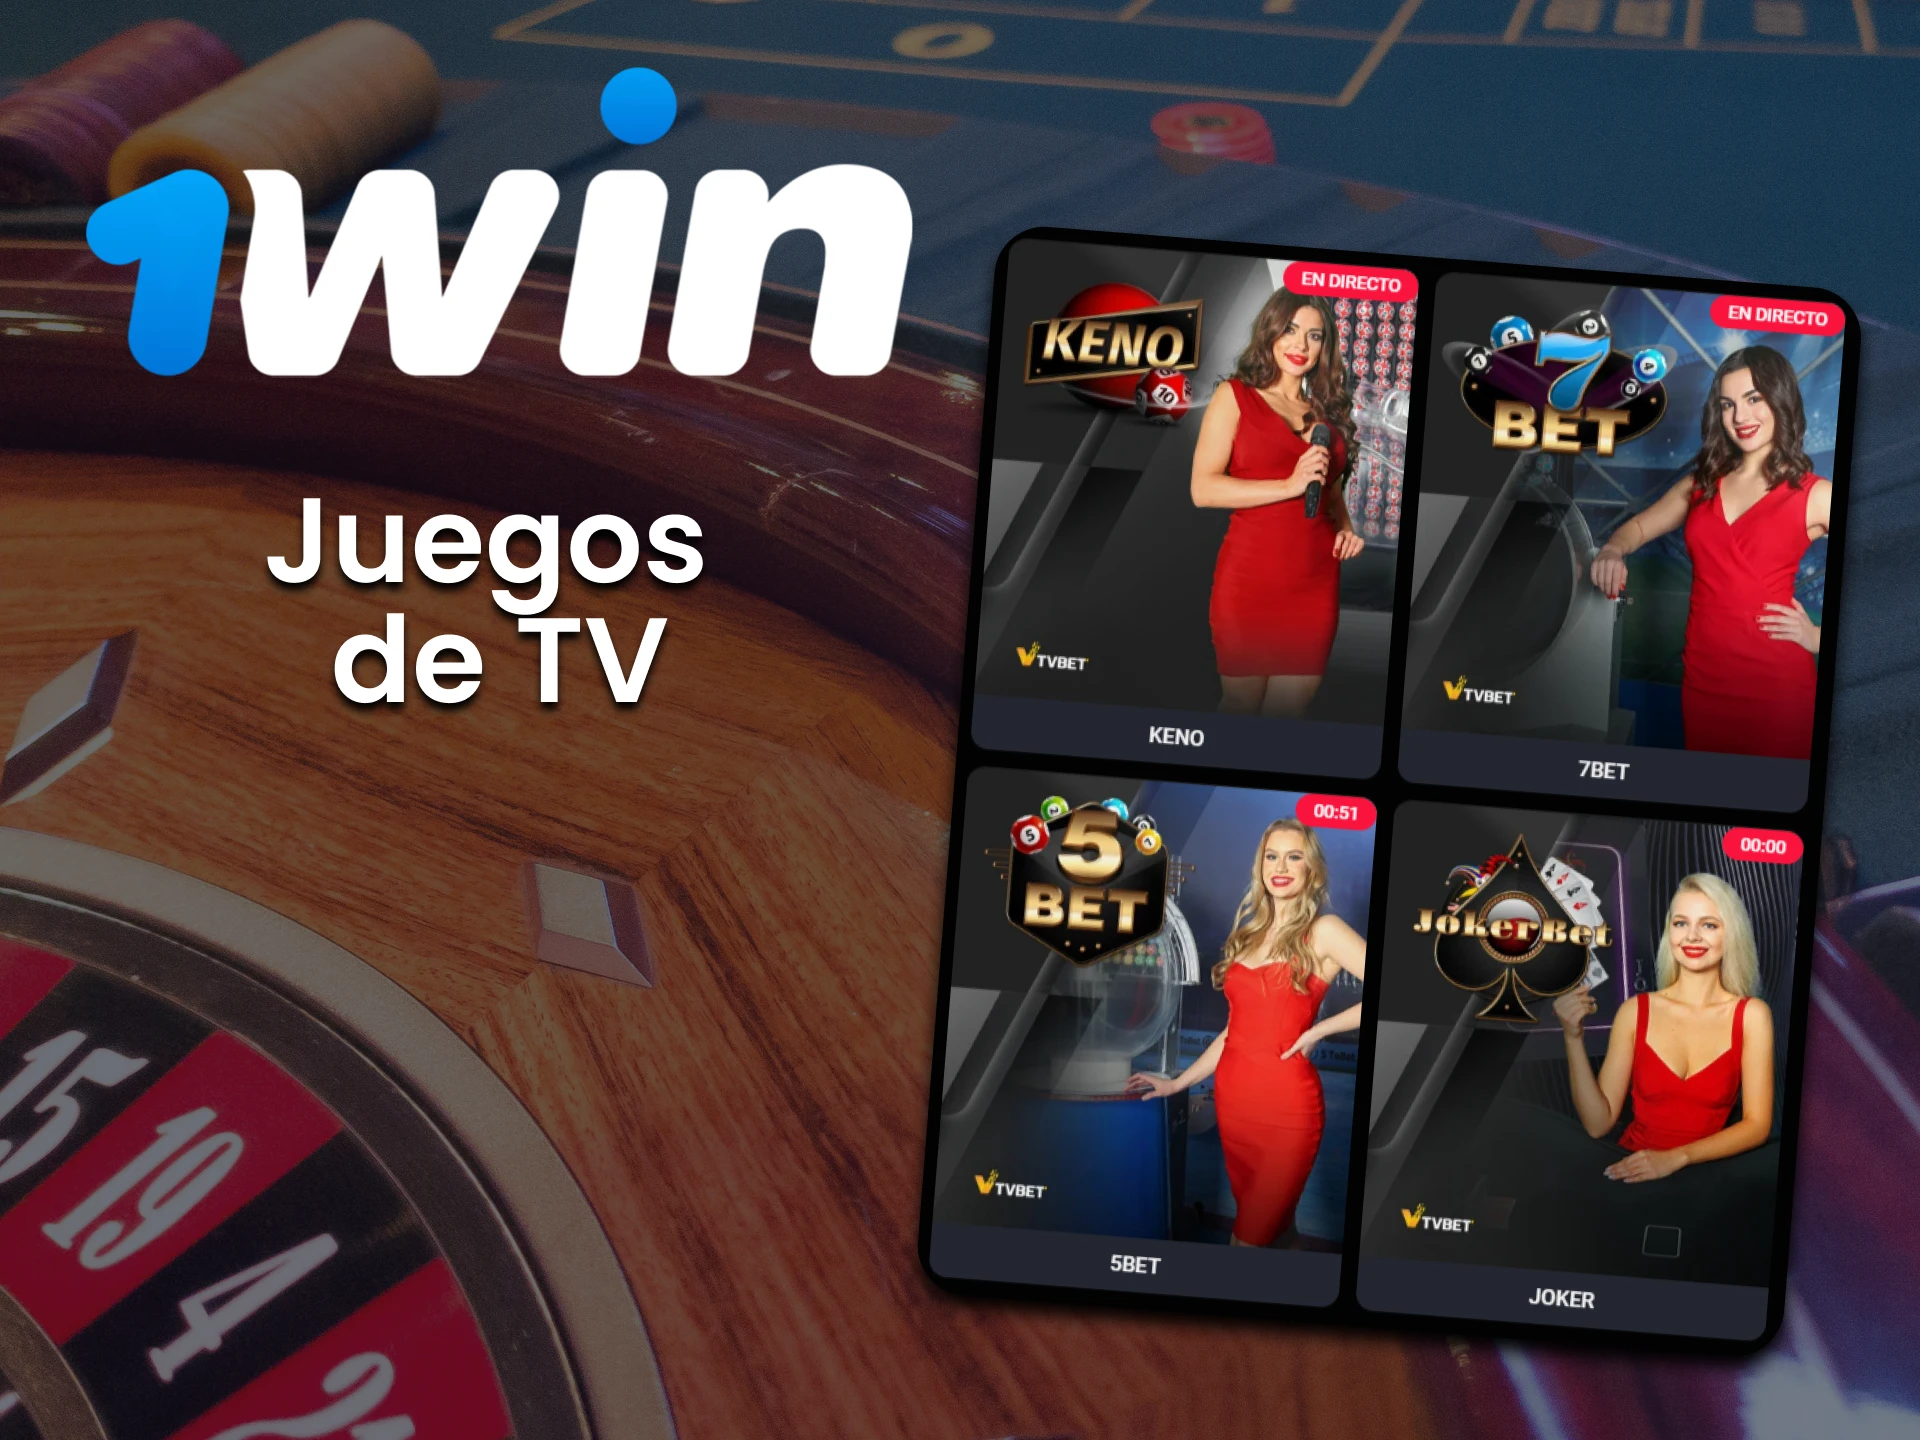 Para juegos de casino, elija juegos de TV de 1win.